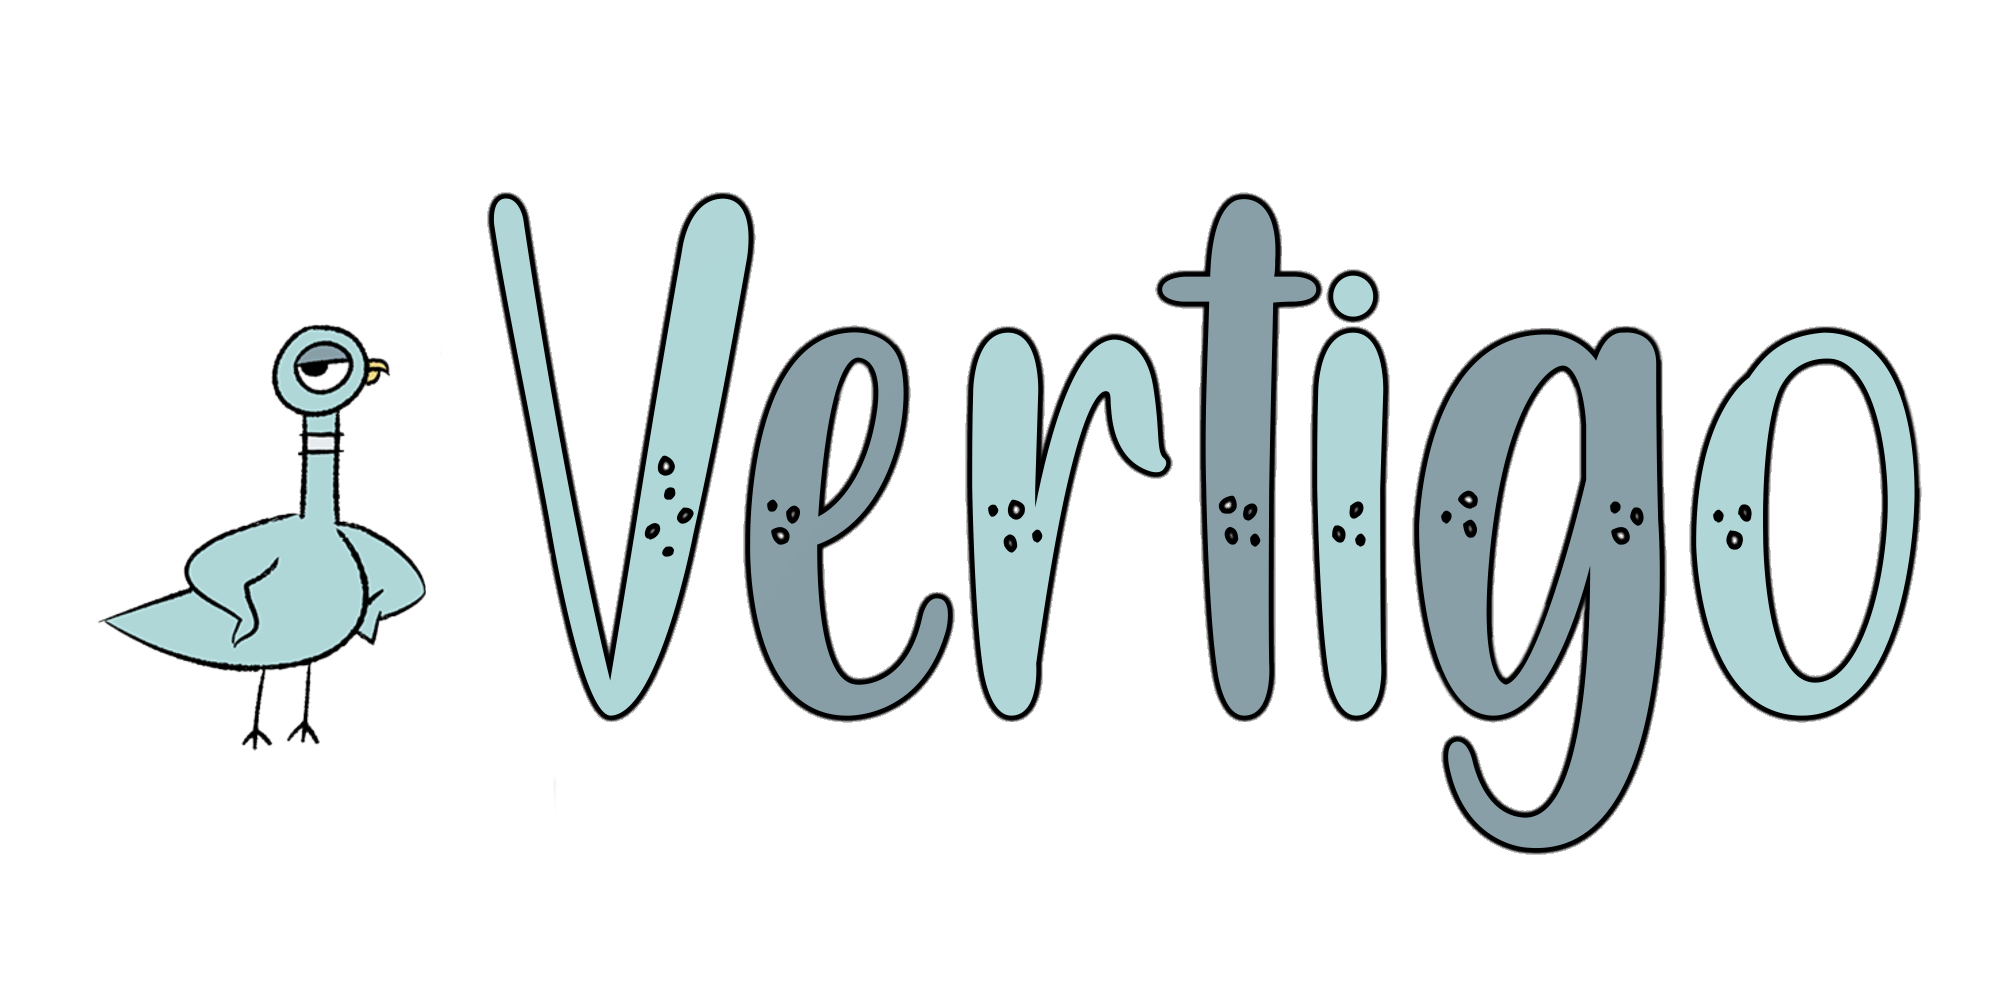 vertigo literary magazine